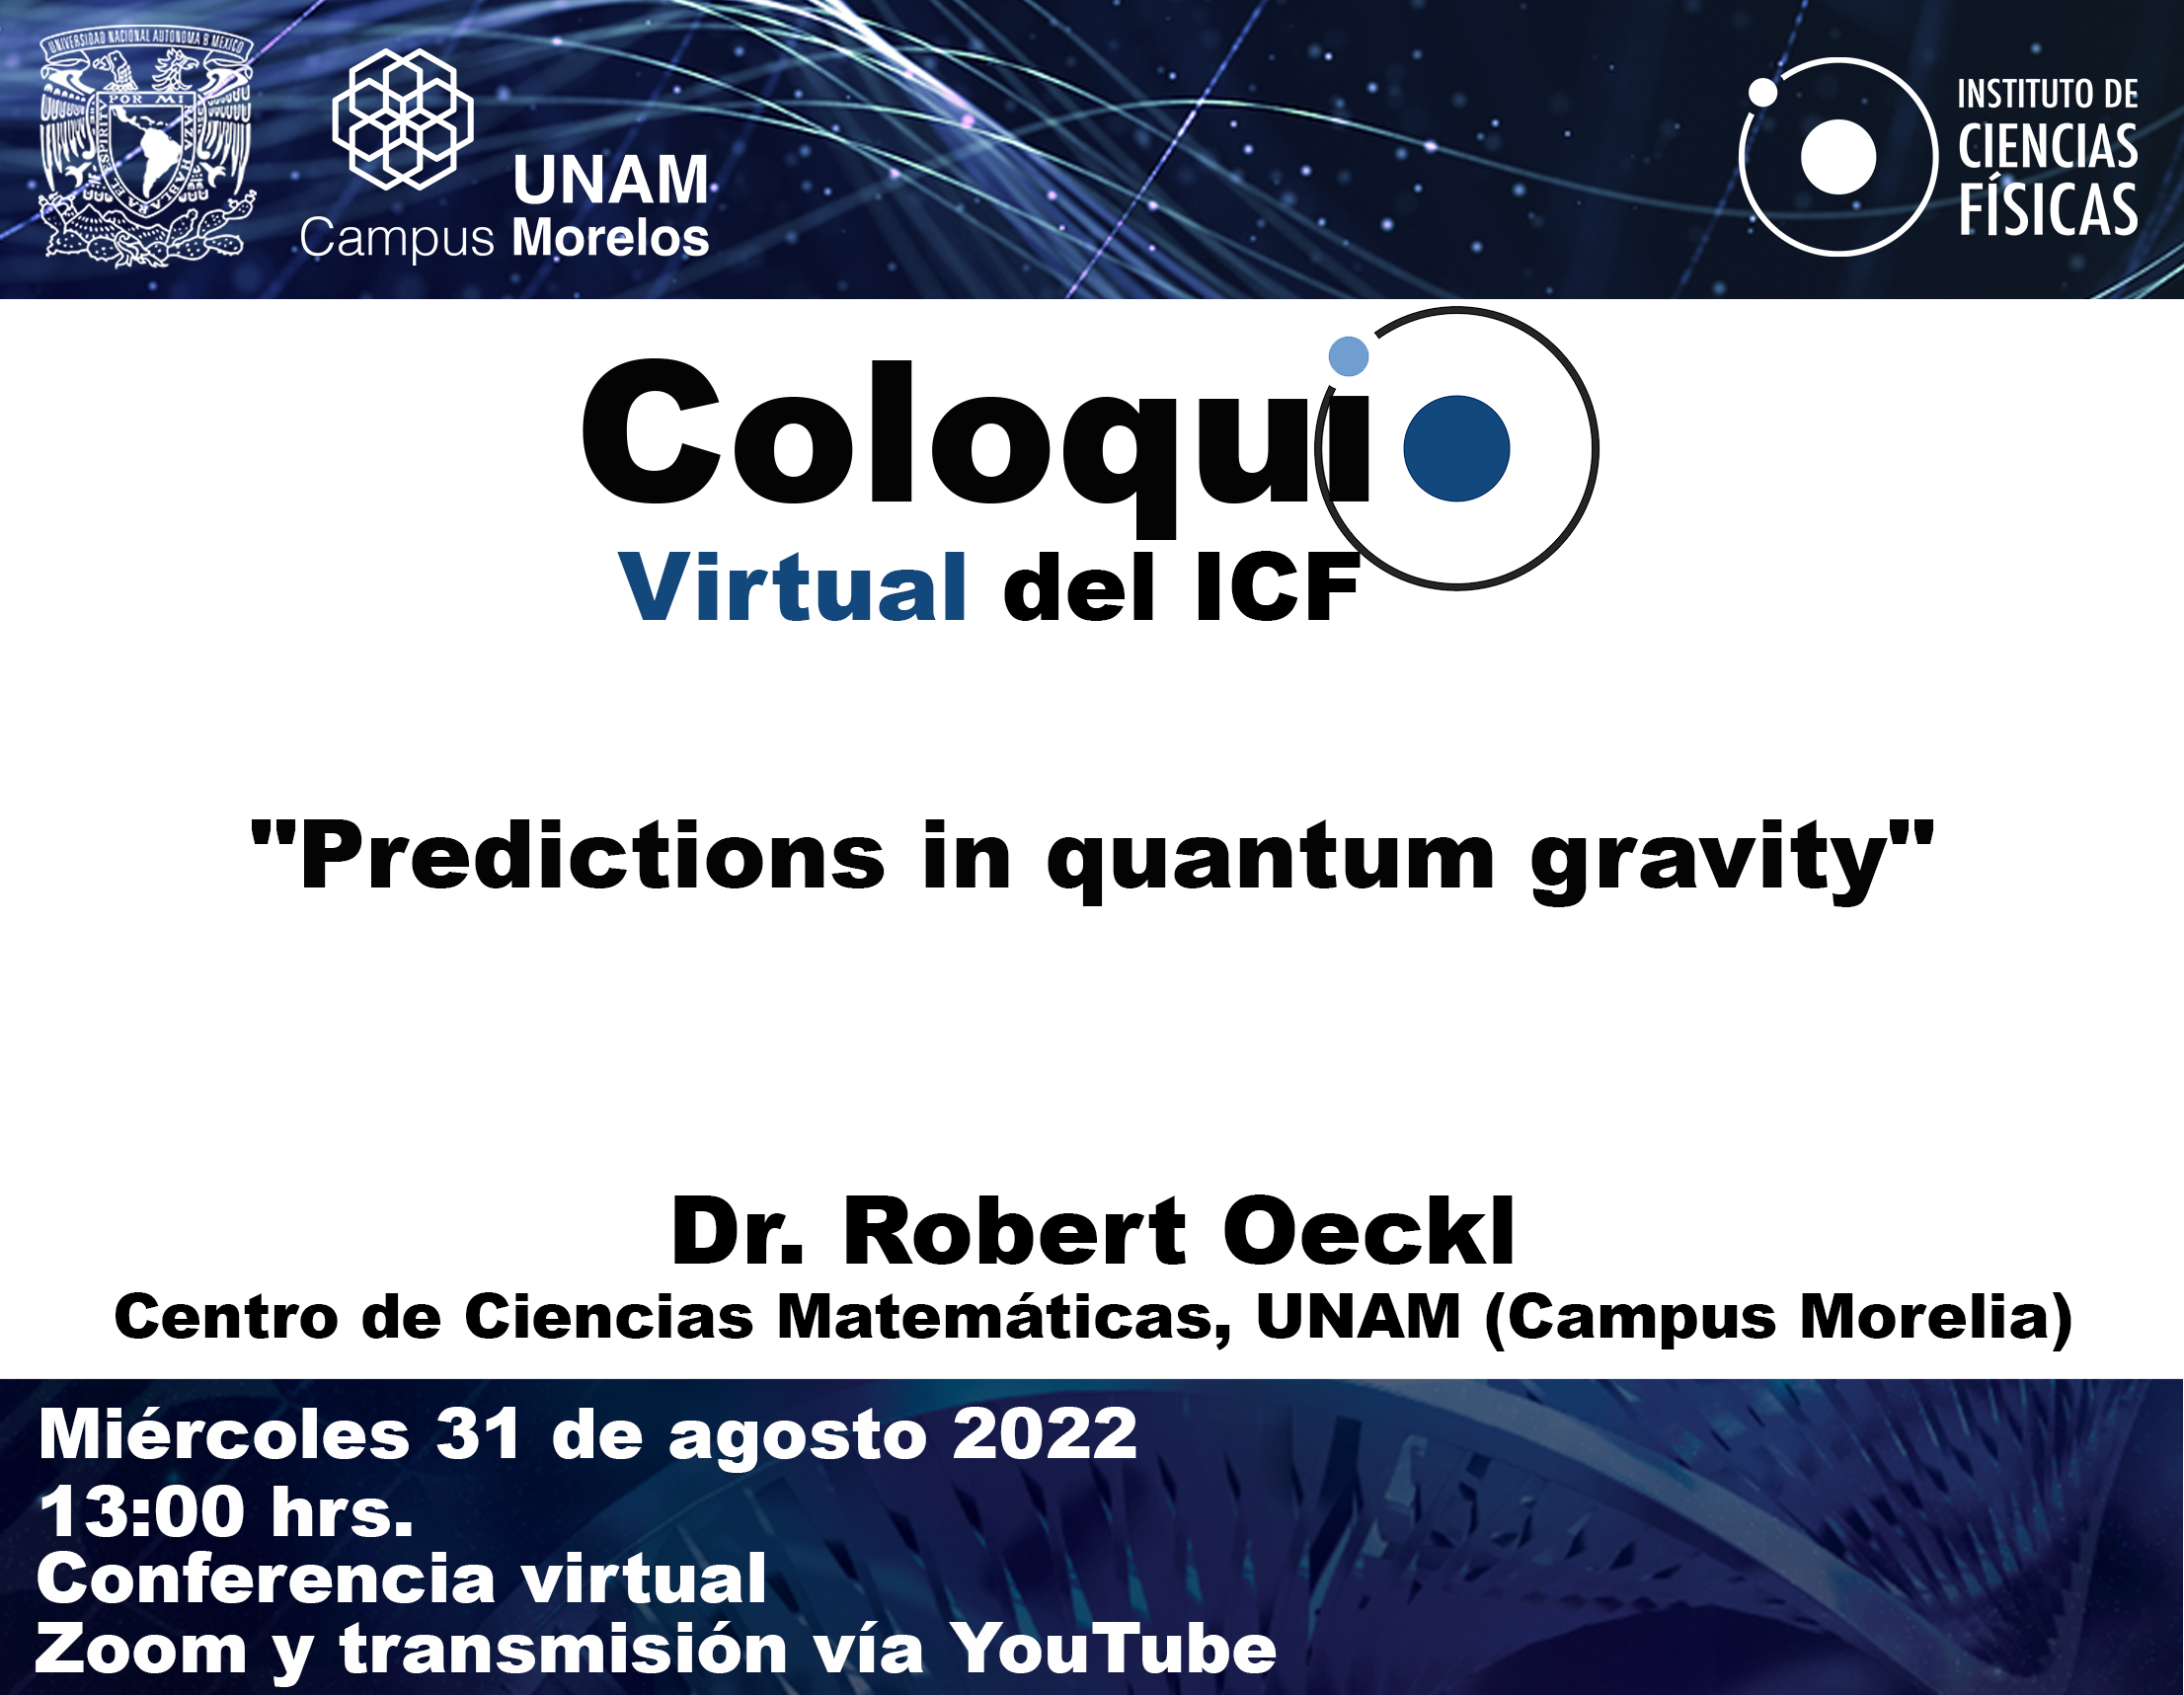  "Predictions in quantum gravity"